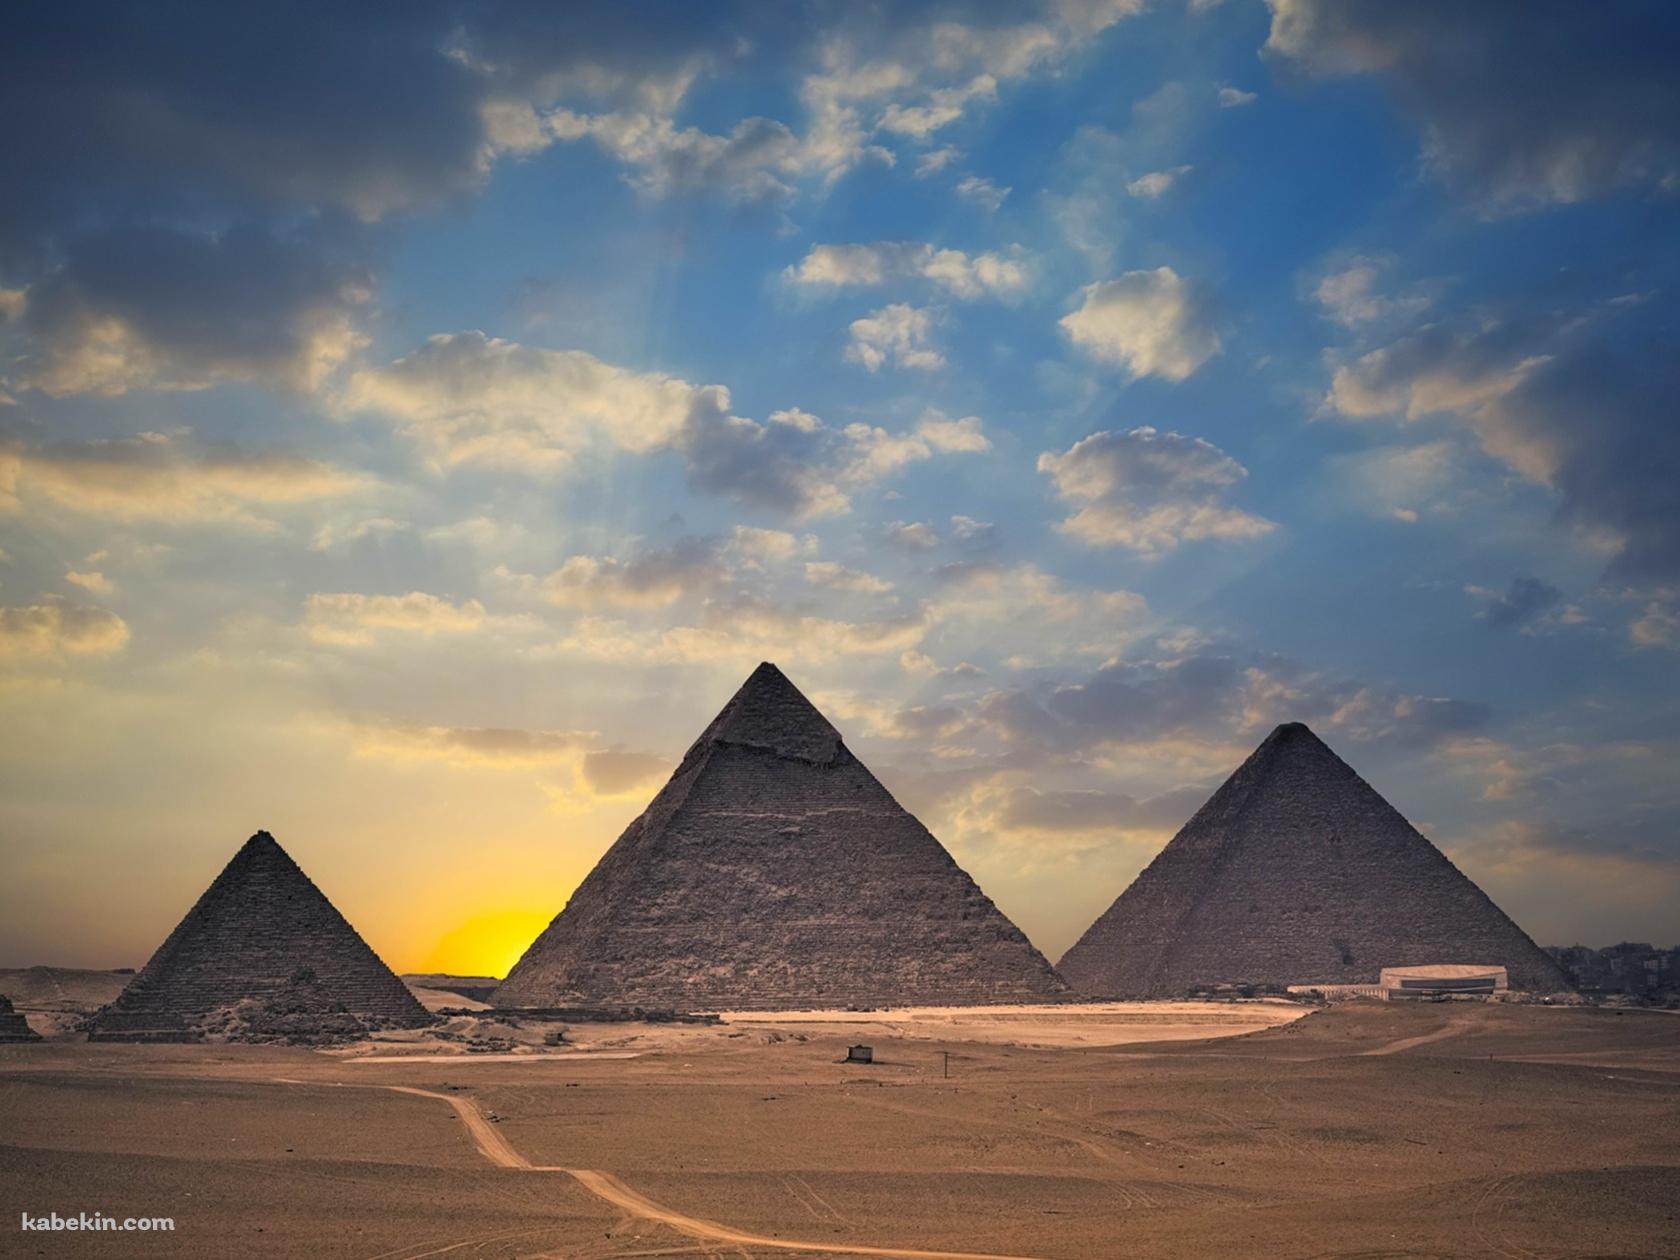 エジプトの並んだピラミッドの壁紙(1680px x 1260px) 高画質 PC・デスクトップ用